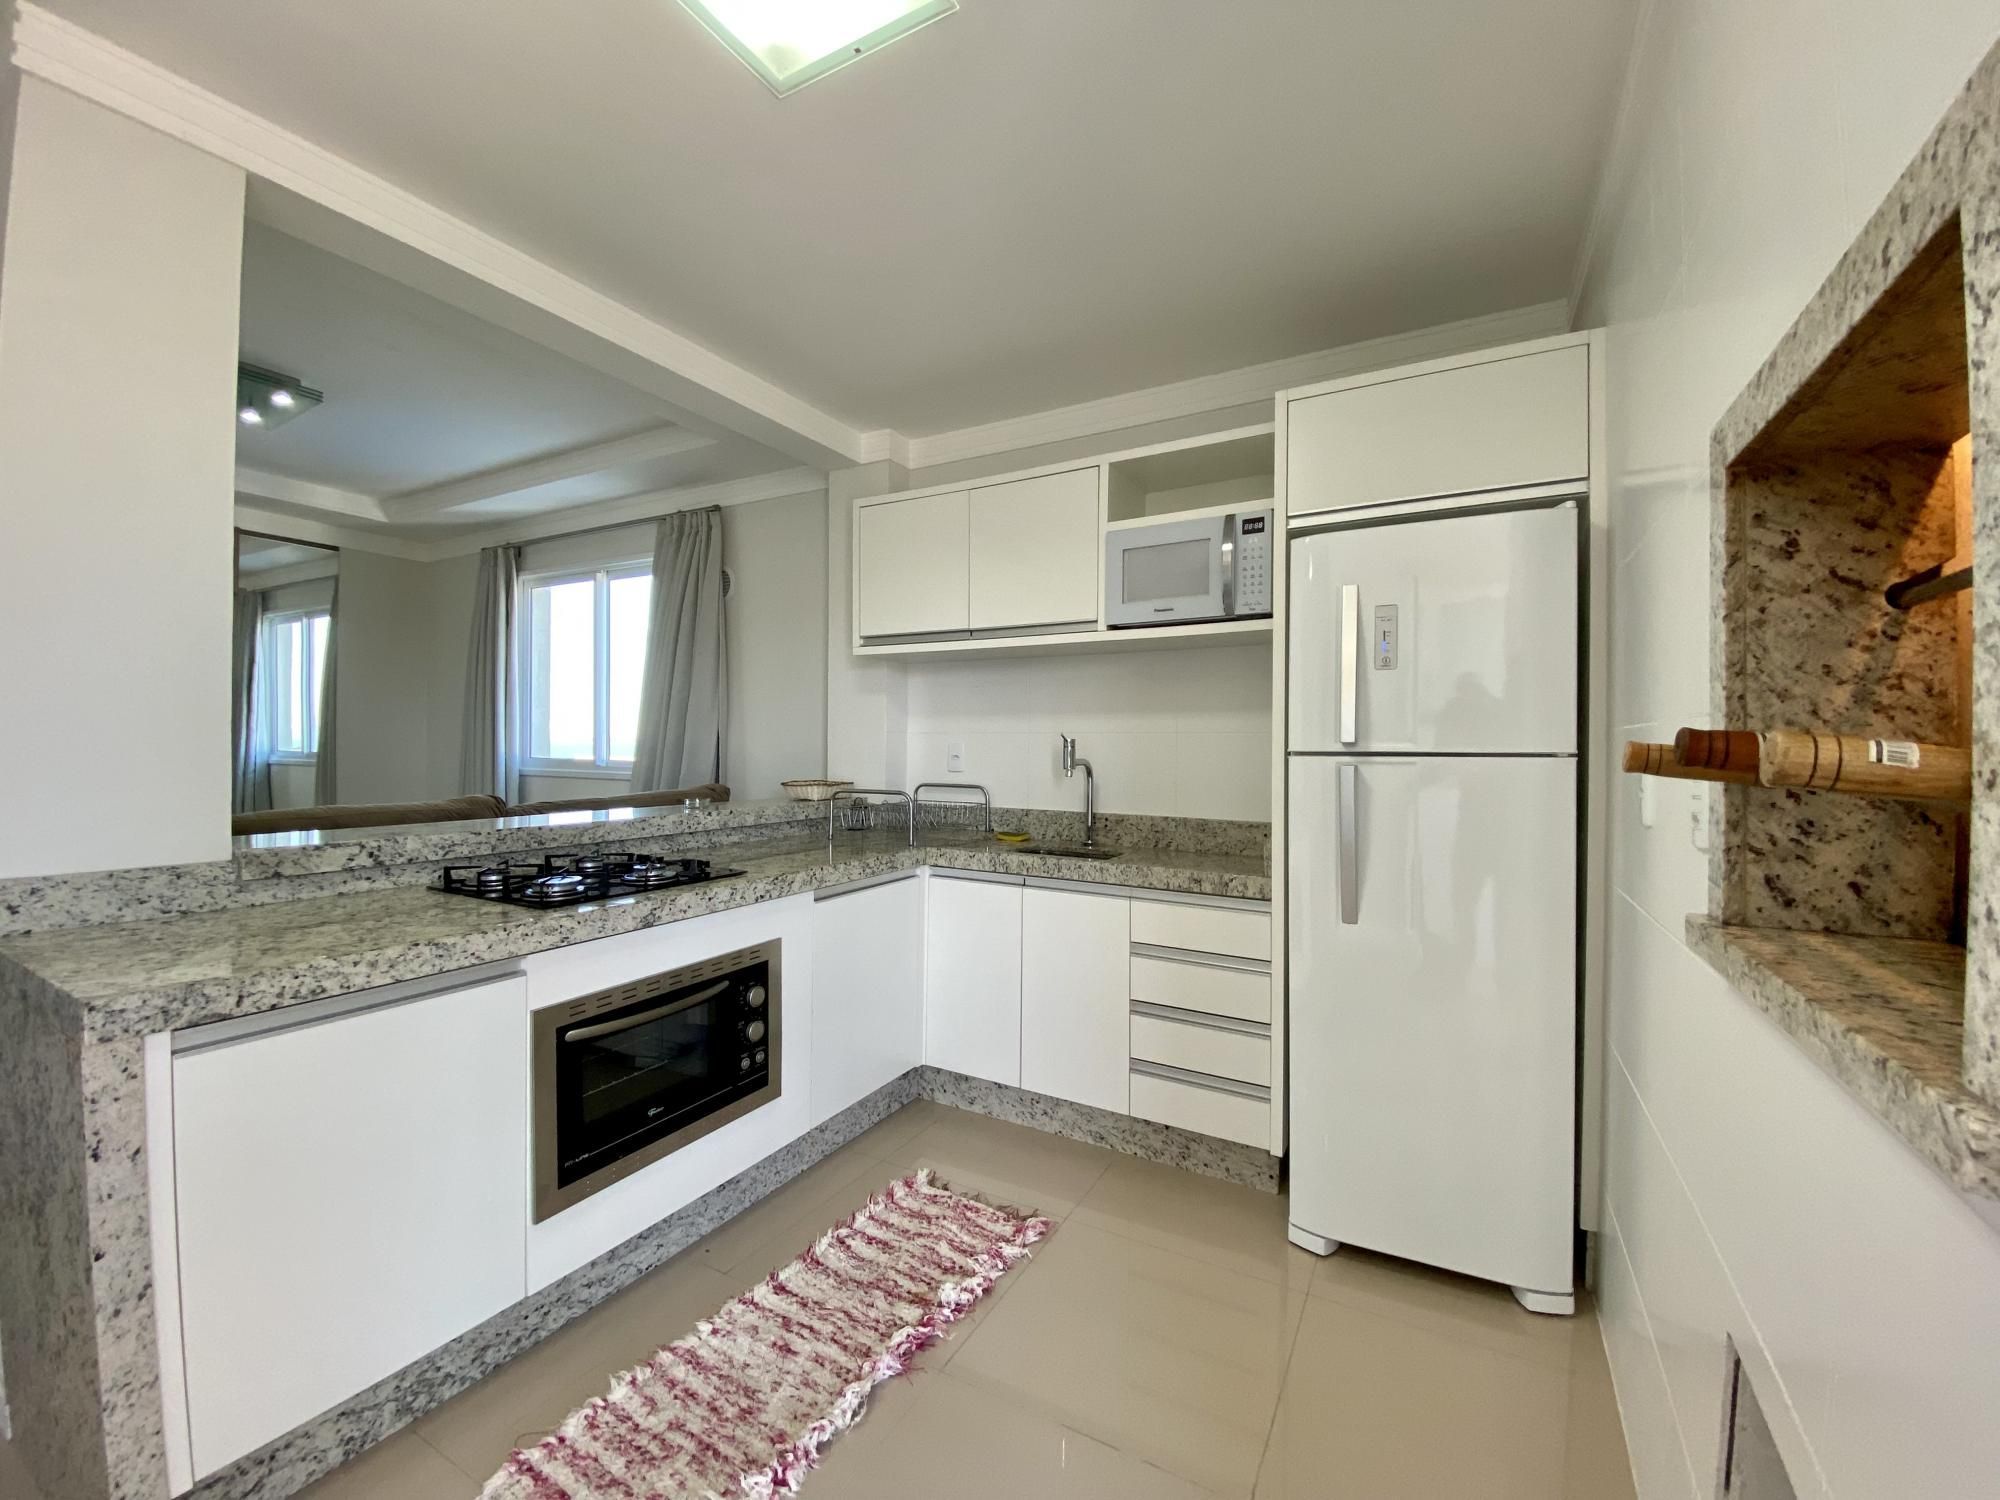 Cobertura com 3 Dormitórios à venda, 160 m² por R$ 1.500.000,00